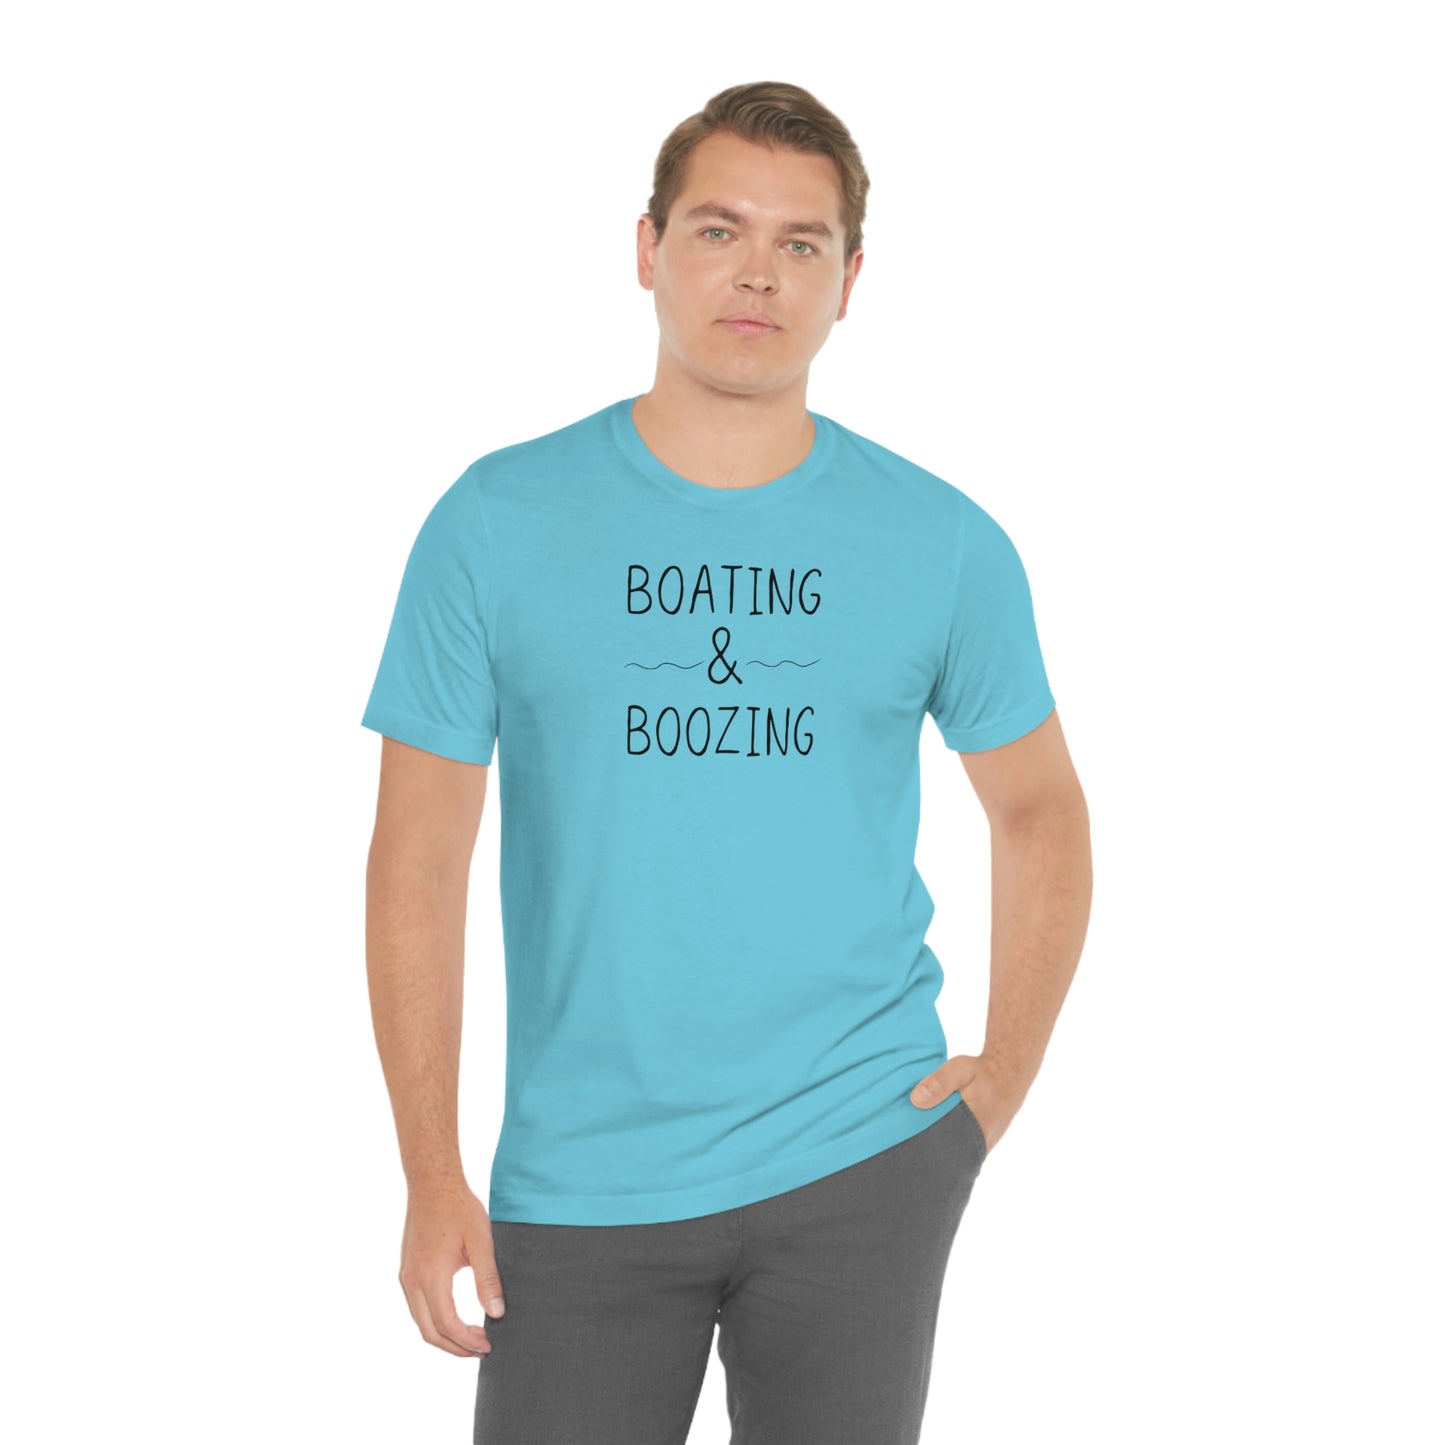 Boating & Boozing Unisex Jersey Short Sleeve Tee